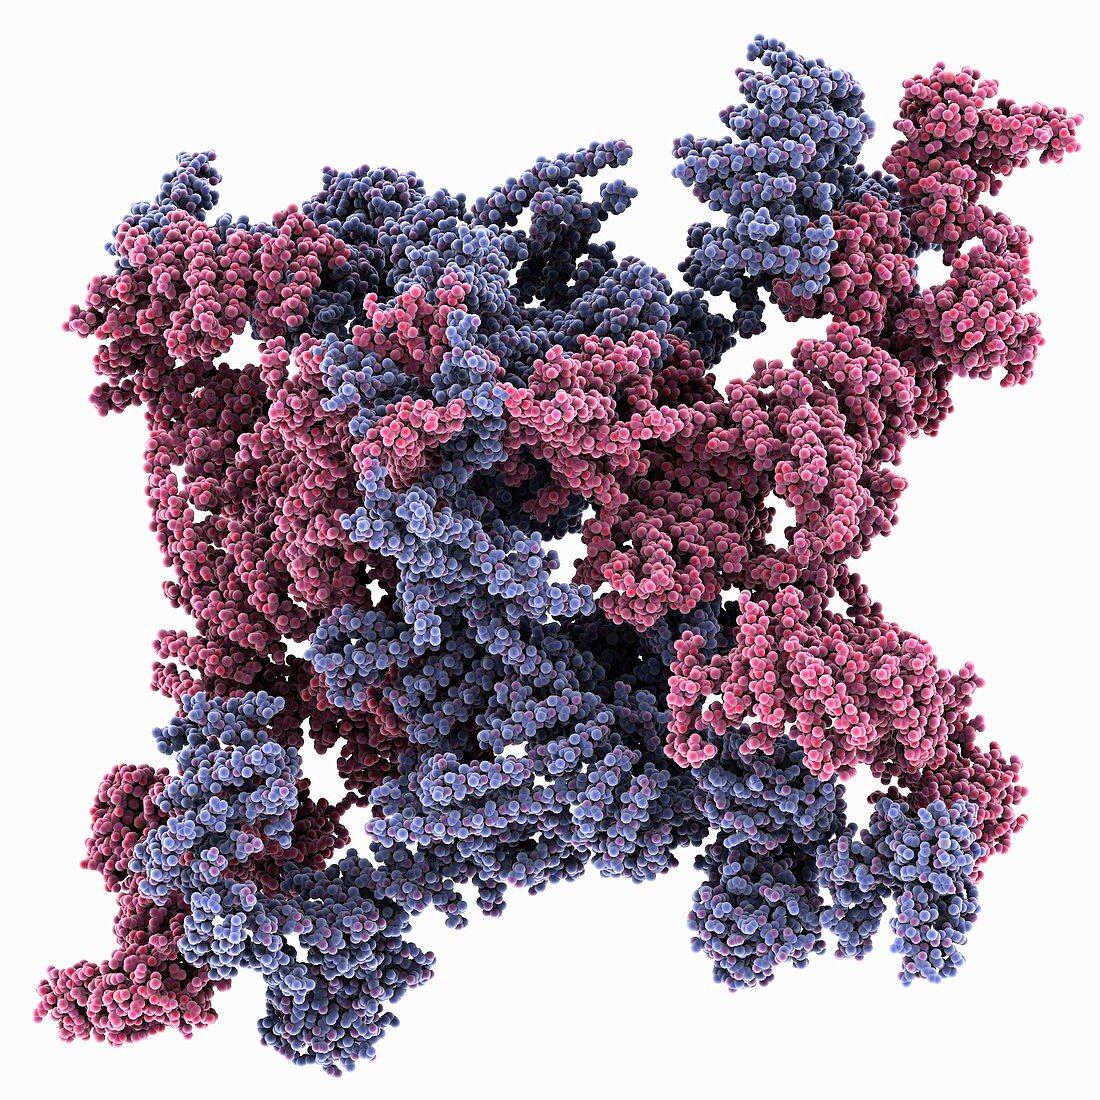 Ryanodine receptor molecule